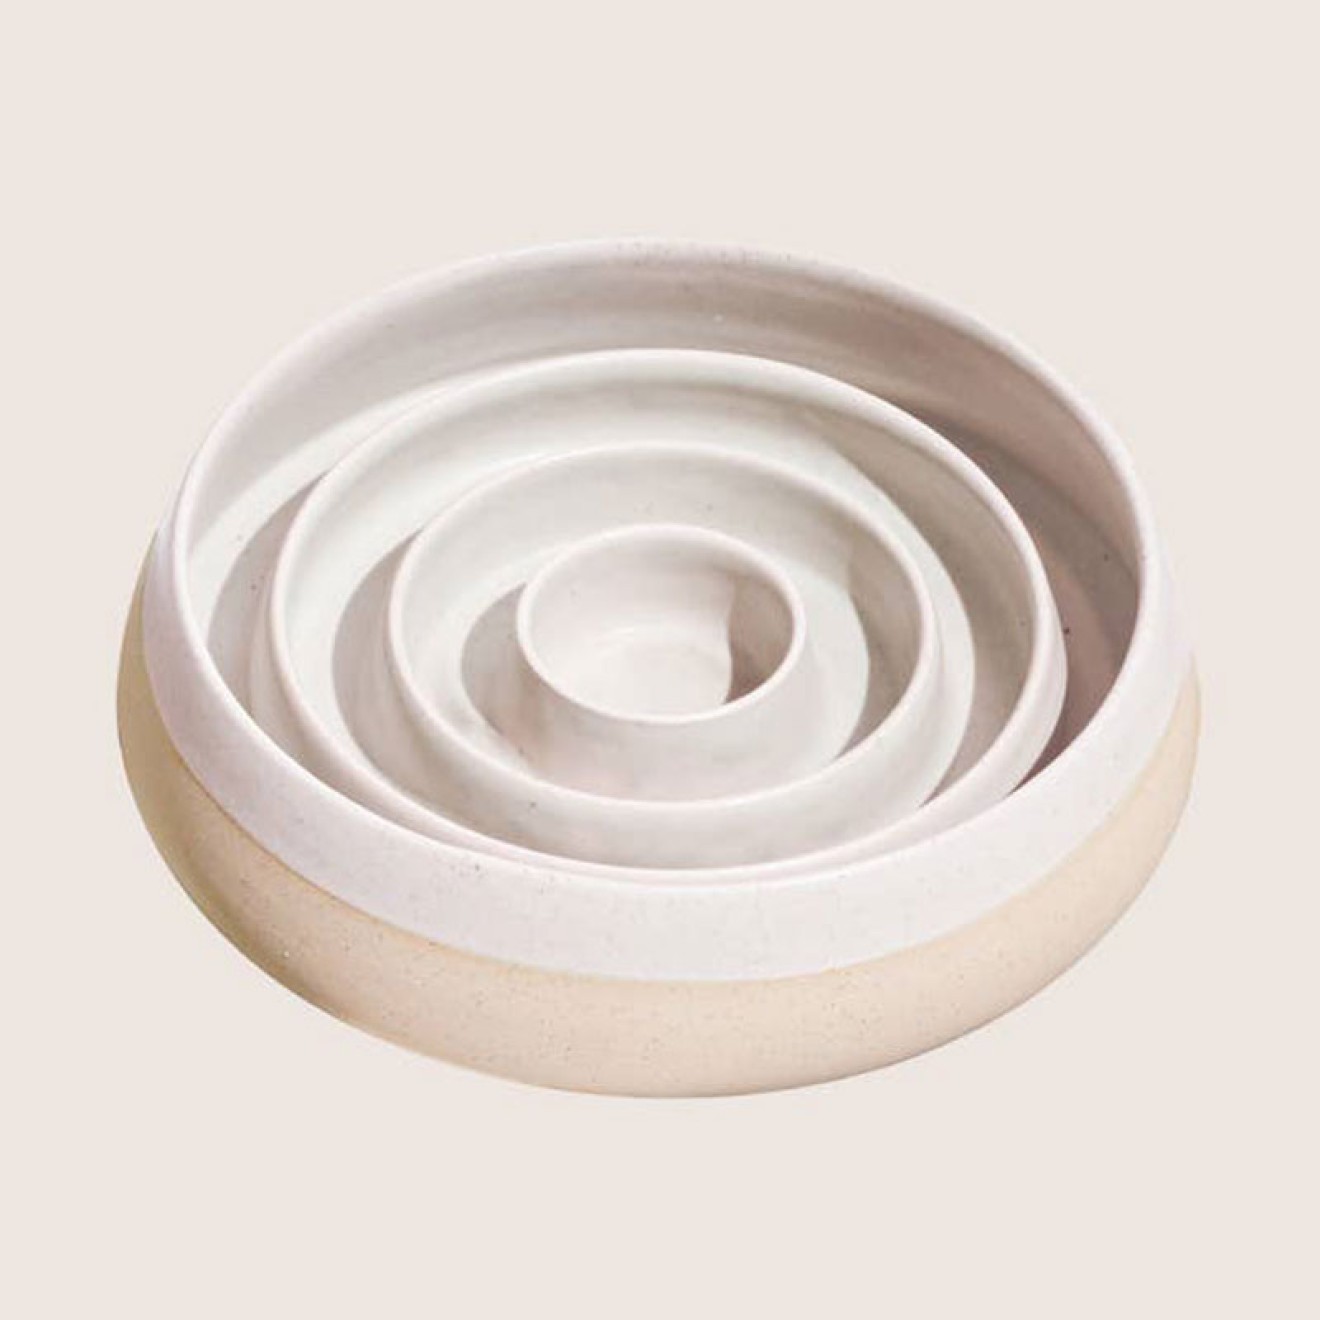 Handgefertigter Antischlingnapf Keramik weiß